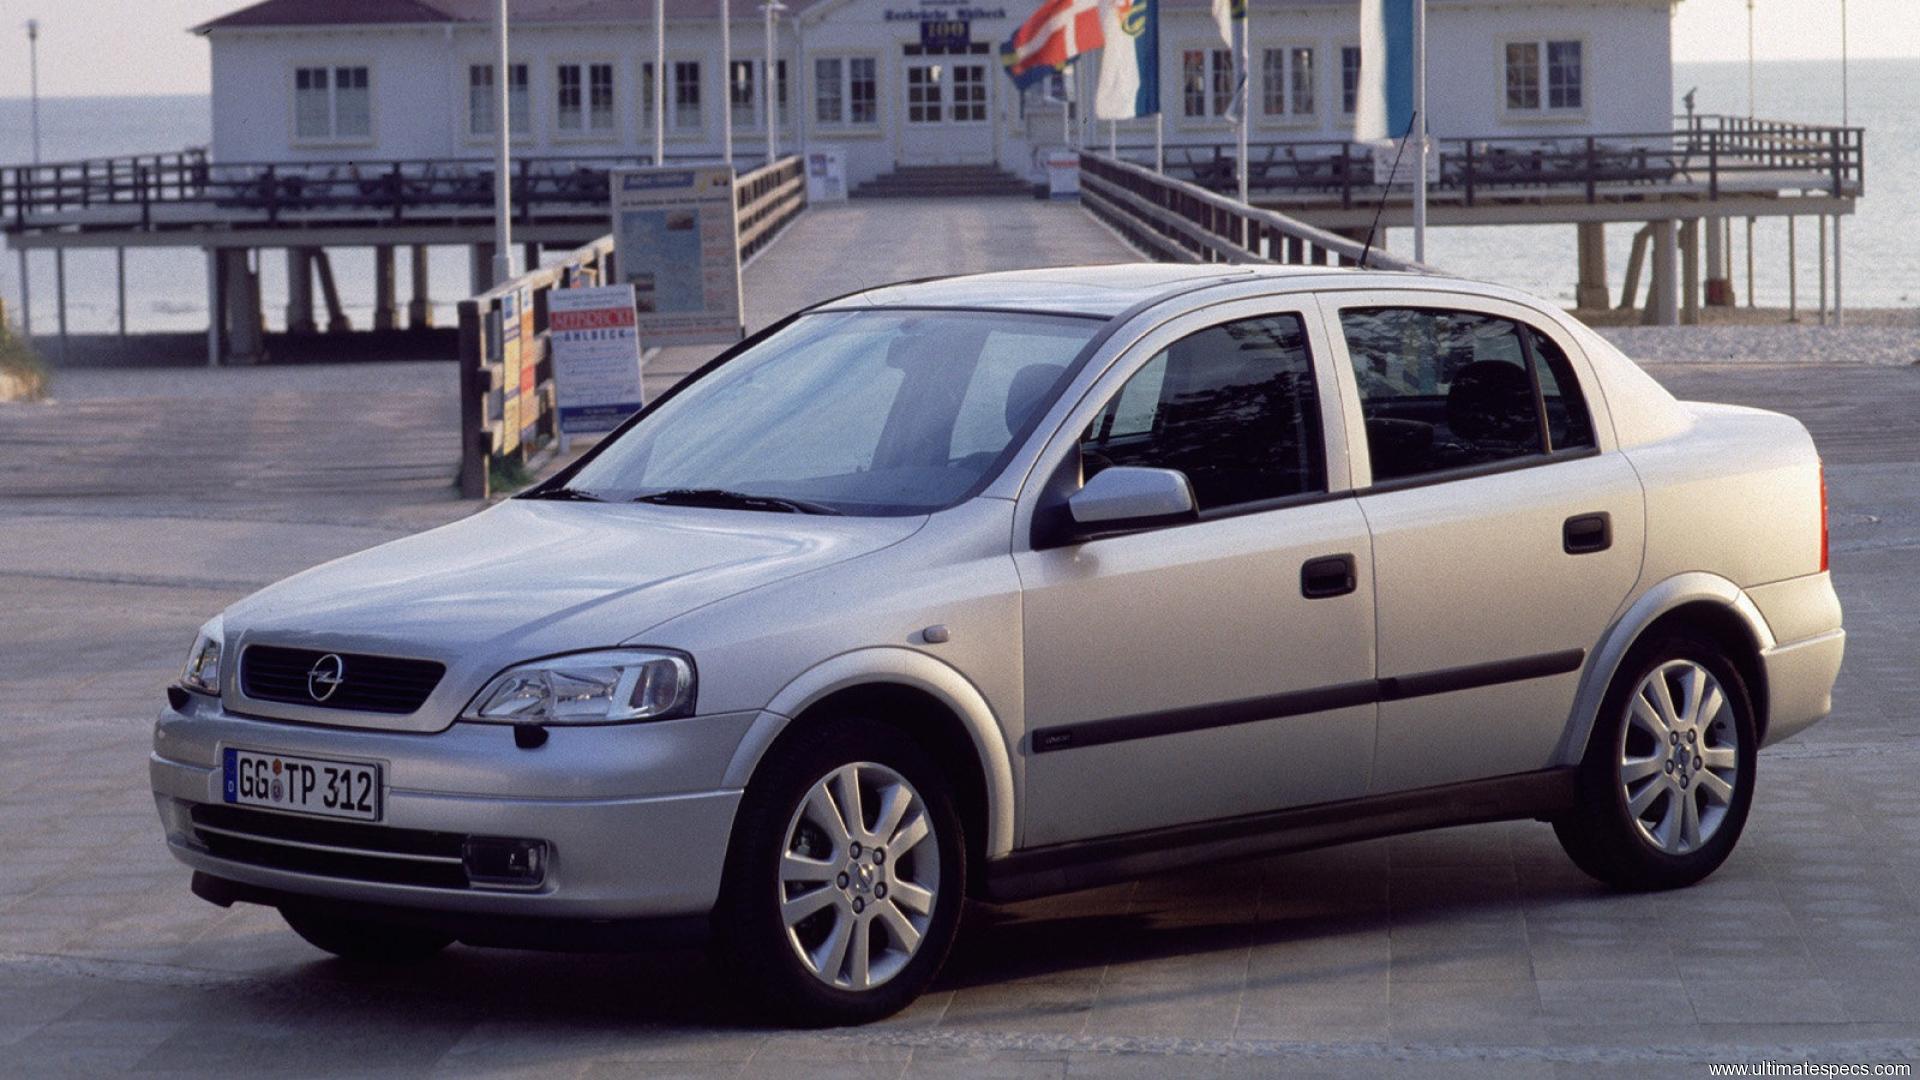 Vauxhall Astra mk4 Sedan